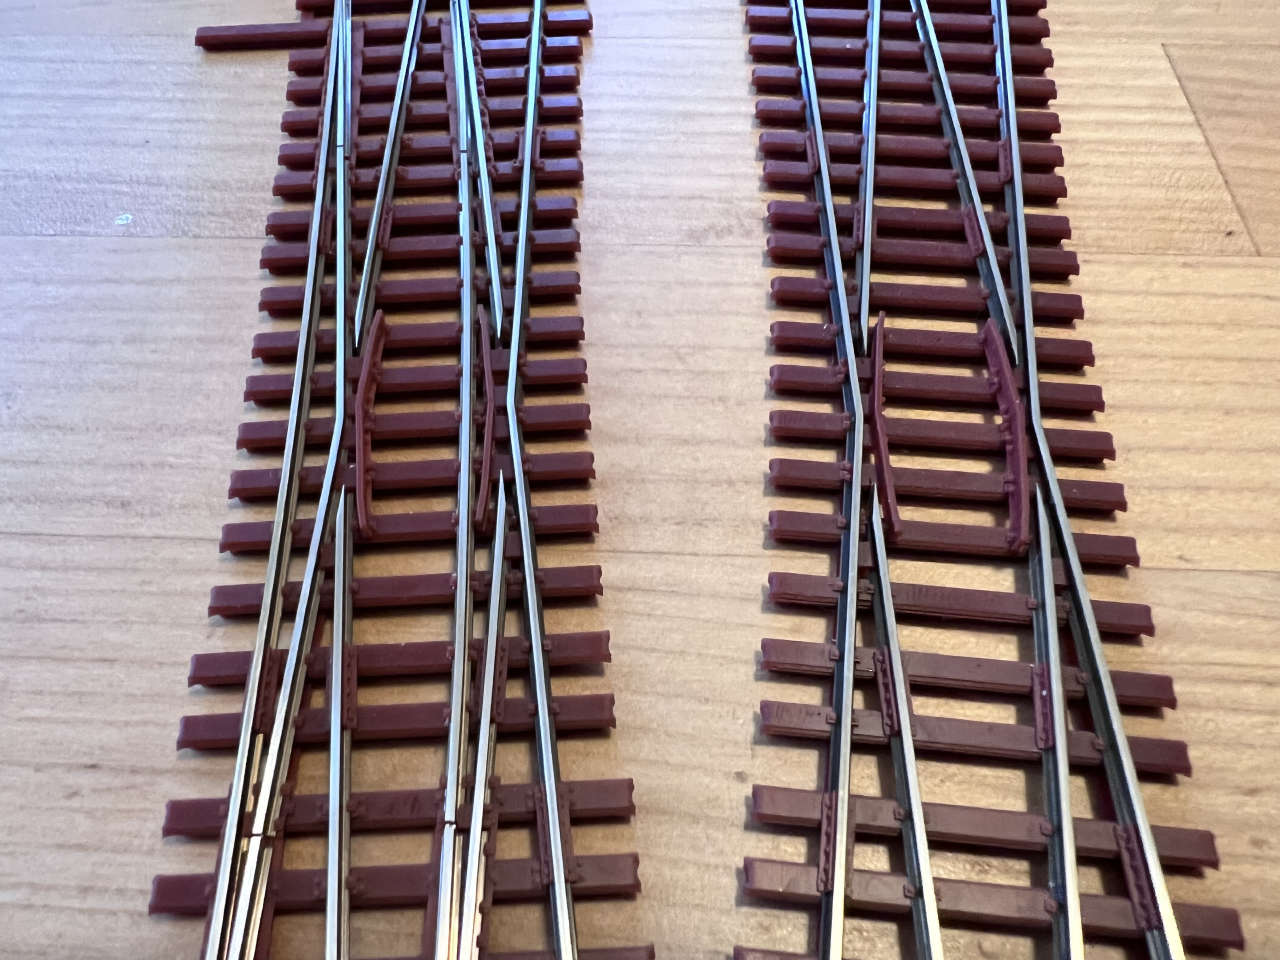 Doppelte Gleiseverbindung DGV 1:7 mit EKW 1:7 und K 1:7 mit durchgehenden geknickten Schienen